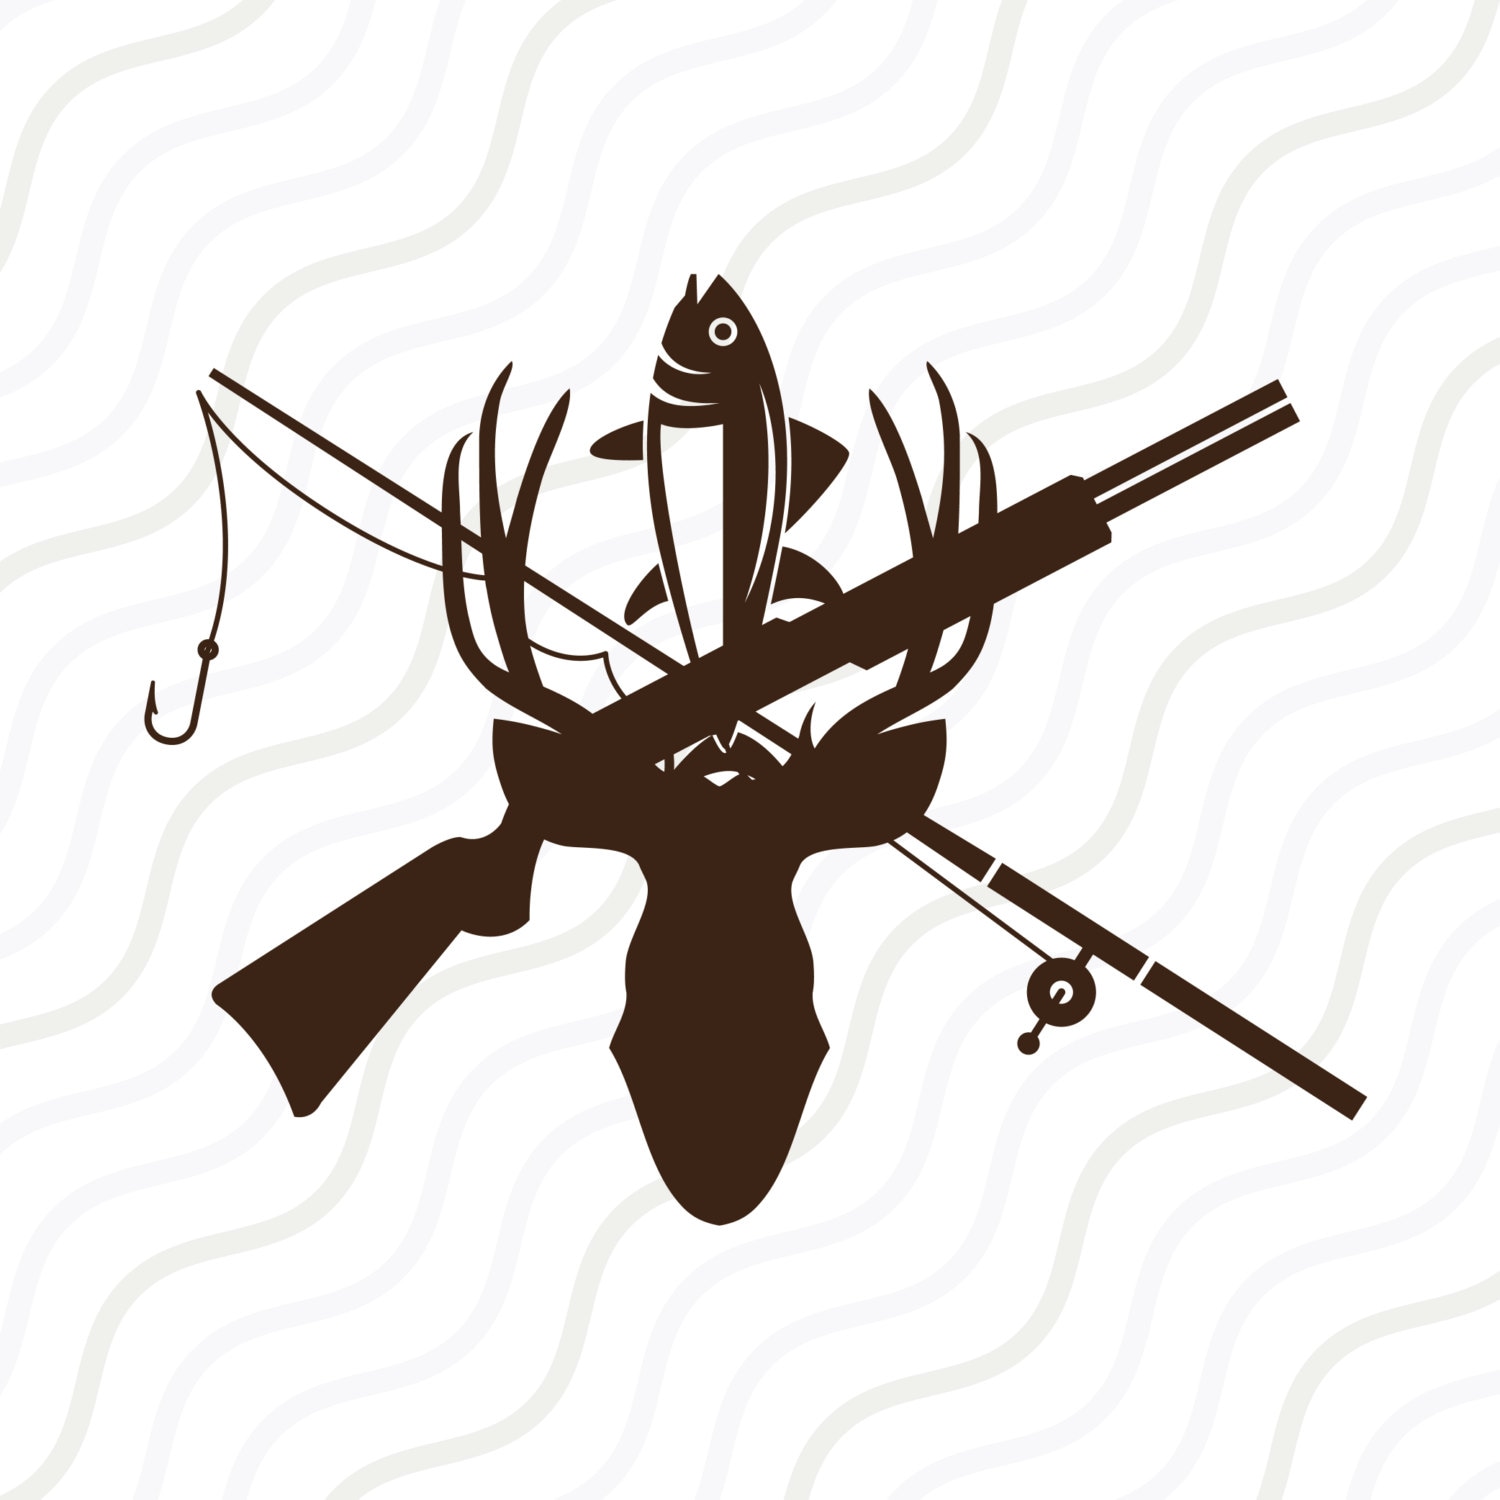 Fish And Deer Svg - 600+ Popular SVG Design - Free SVG Cut Files For